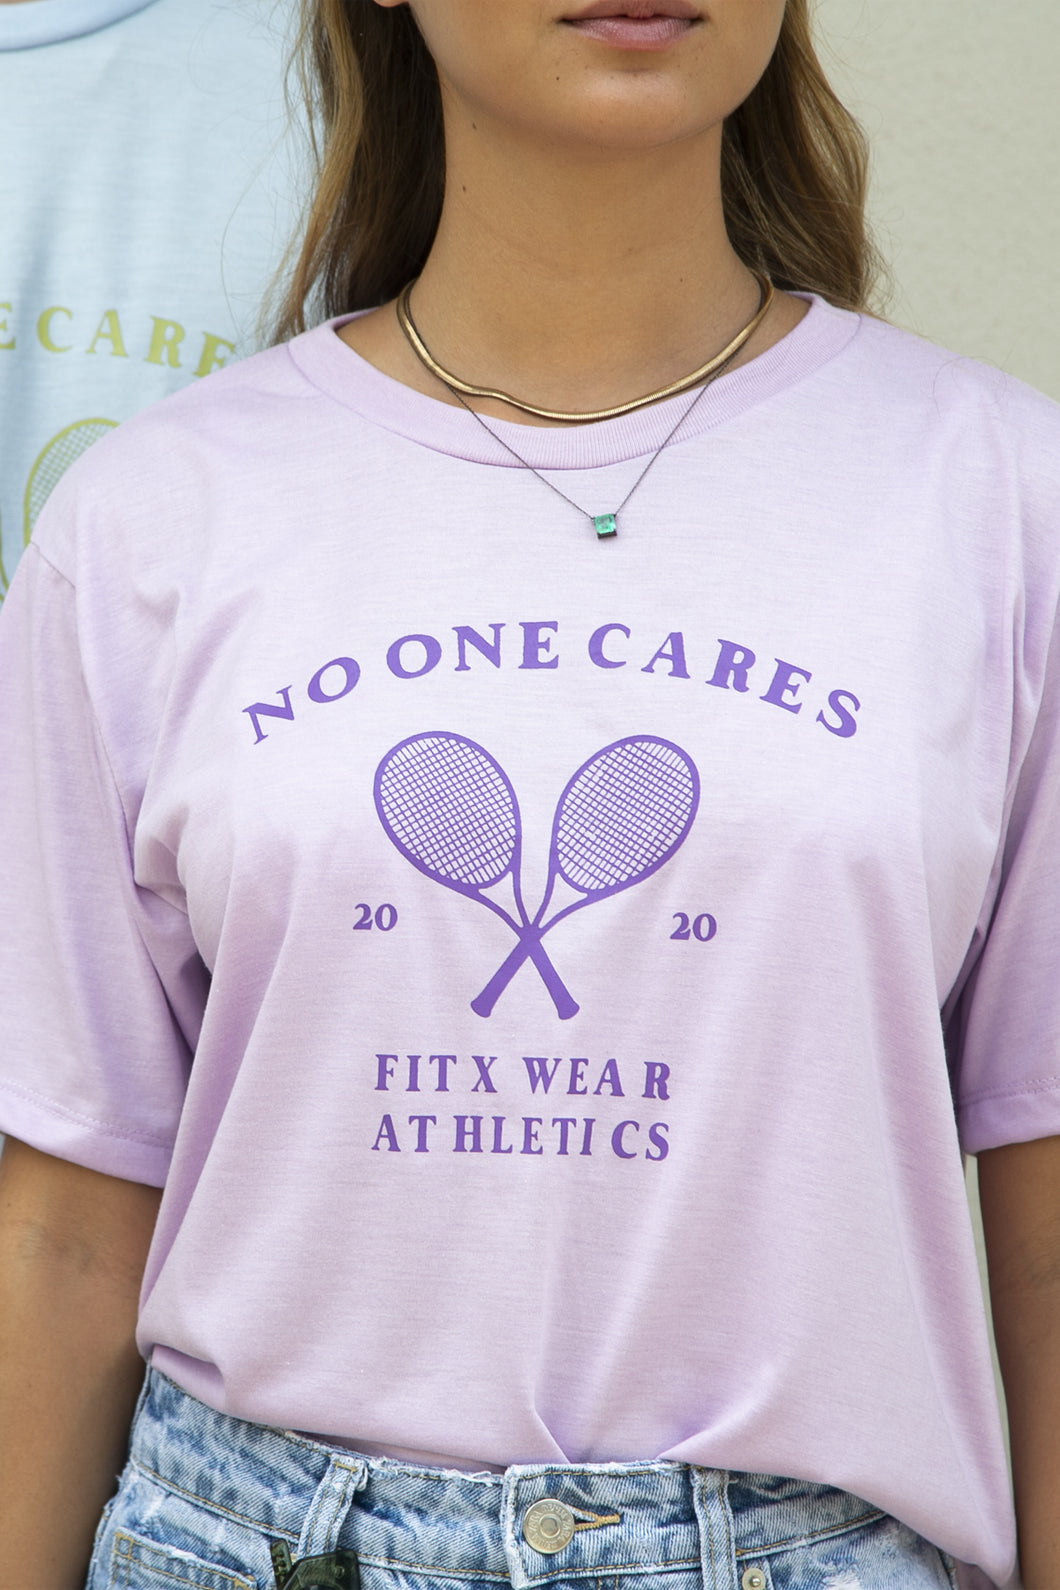 F5 - No One Cares T-shirt